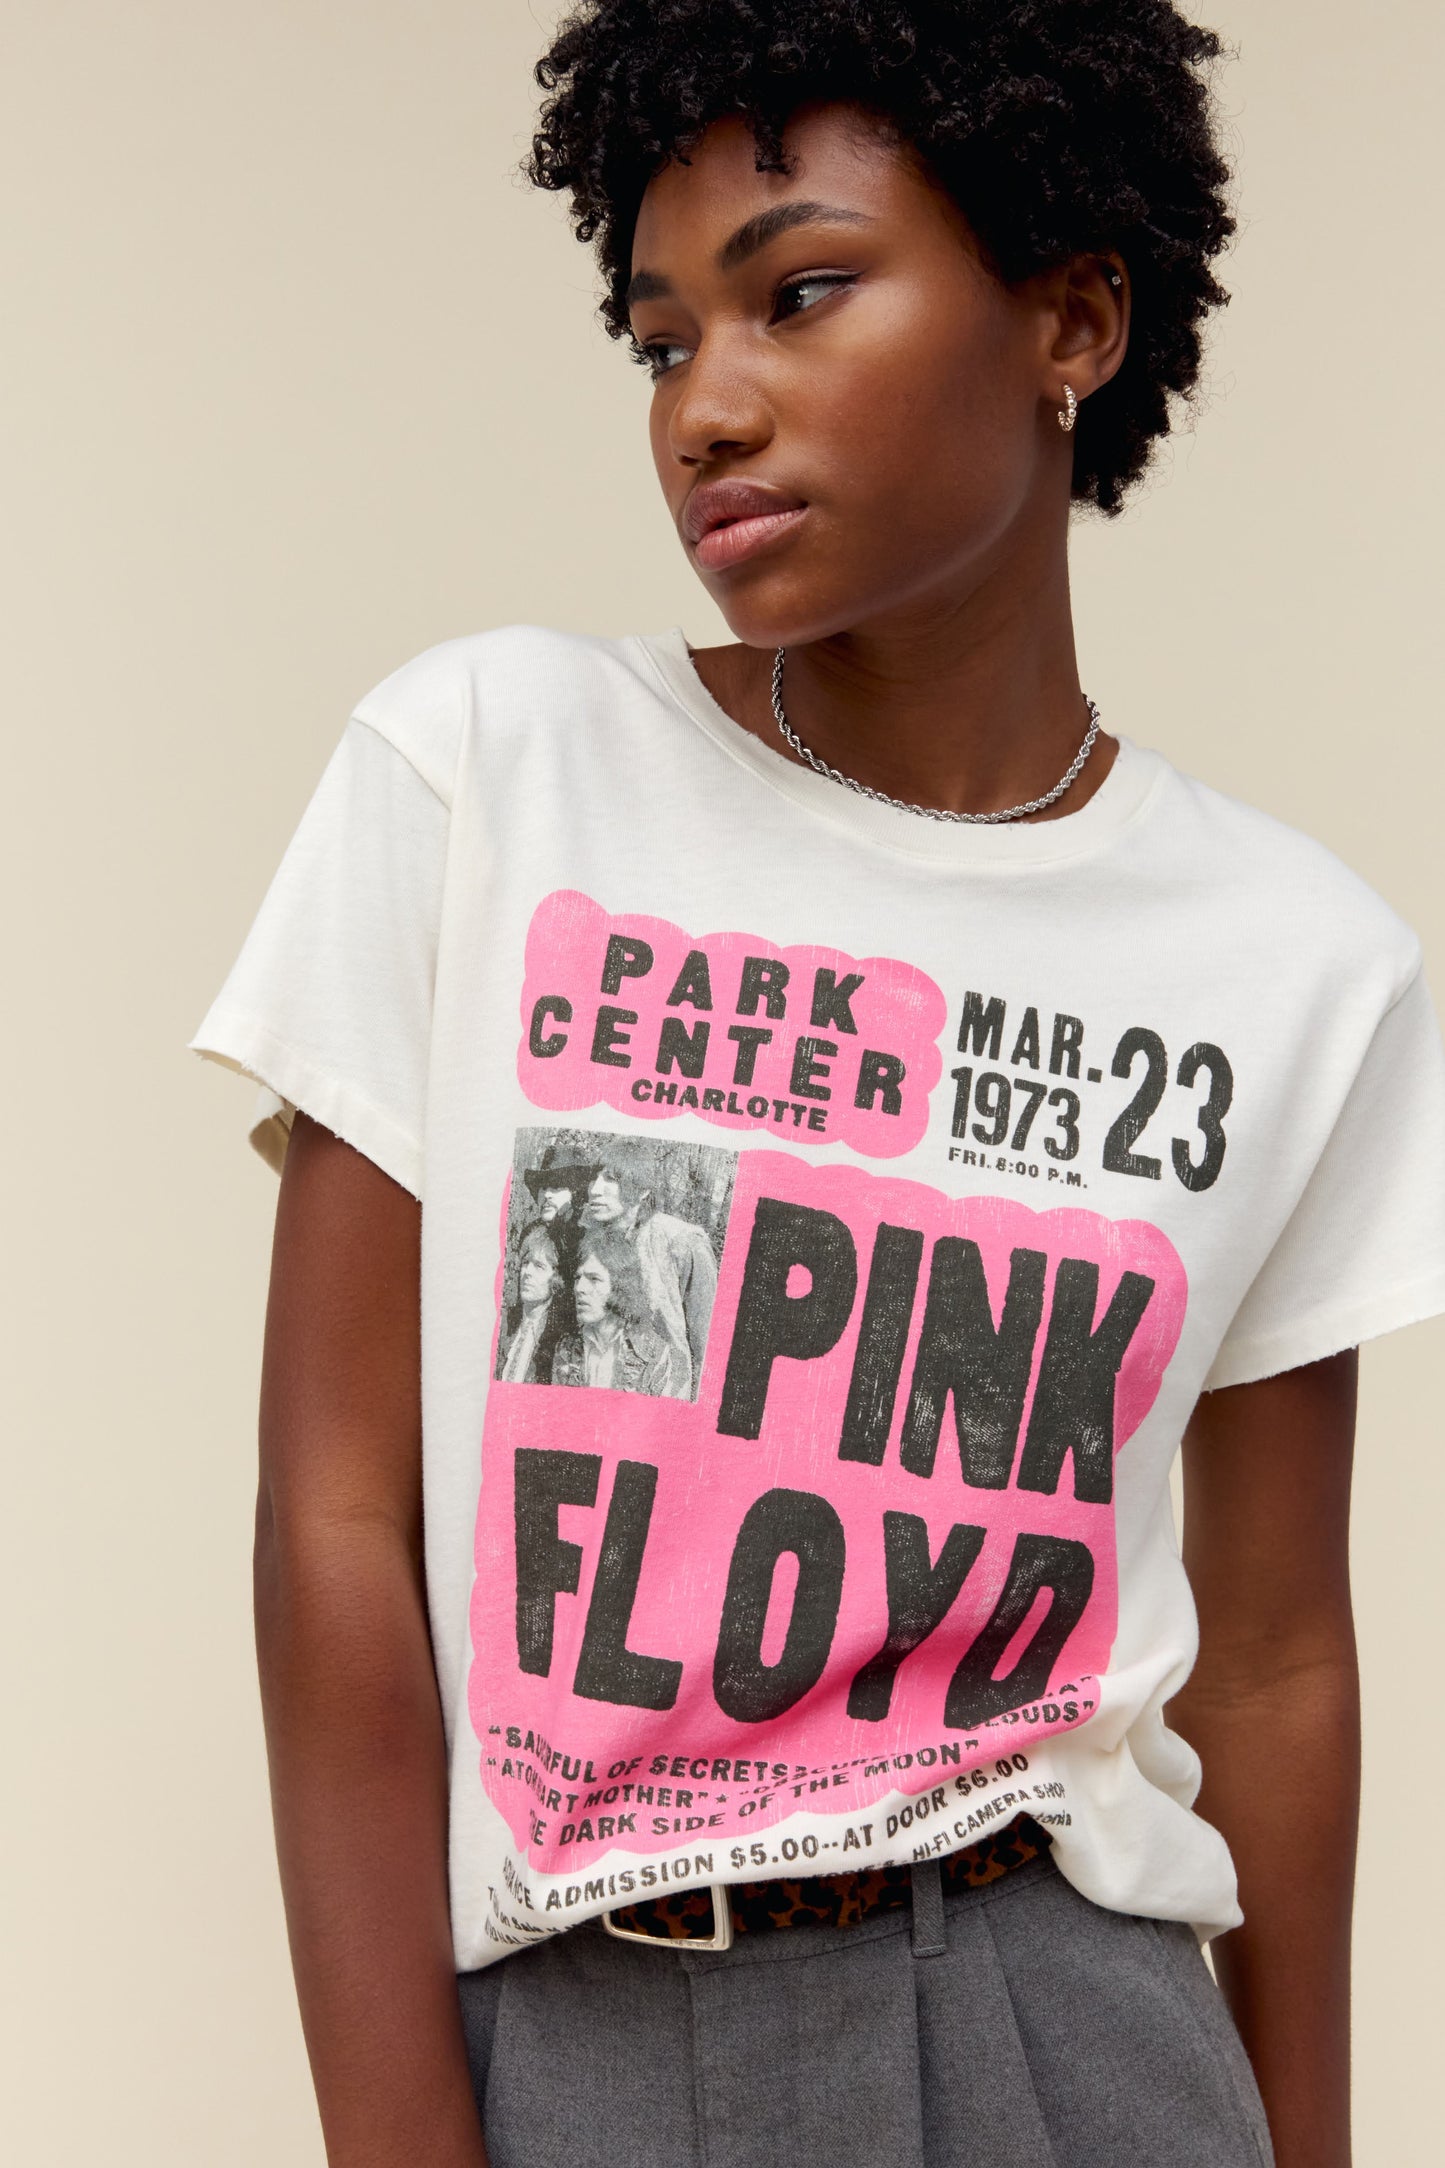 Daydreamer 핑크 플로이드 1973 플라이어 투어 티셔츠 여성